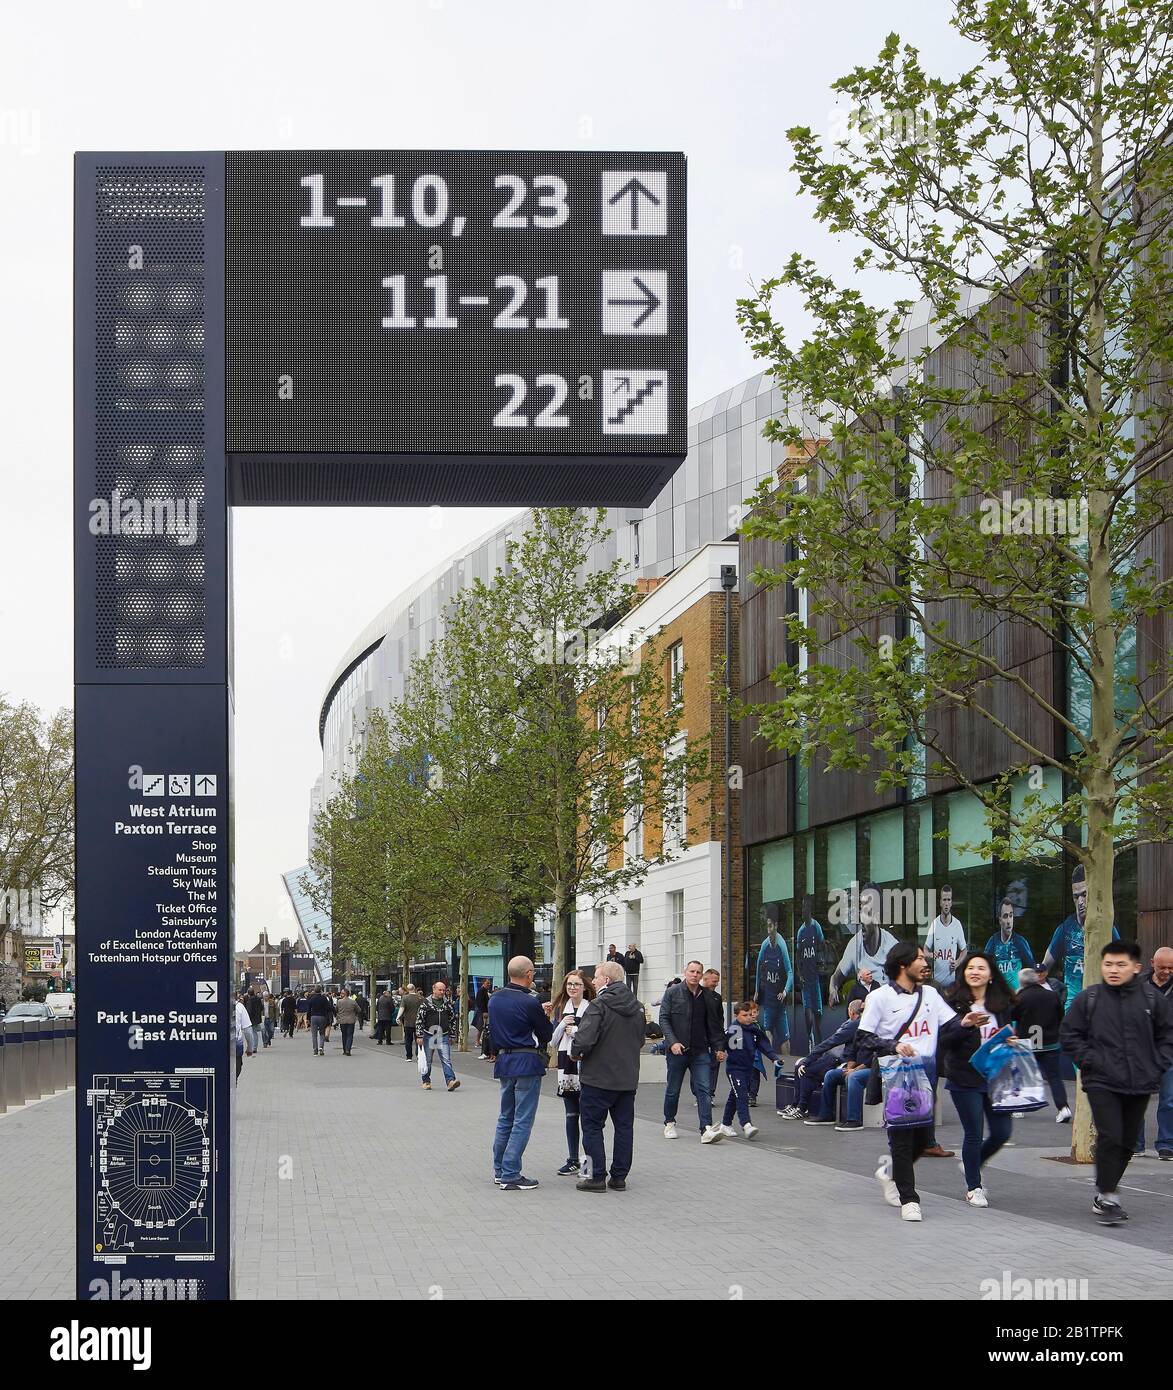 Système de guidage avec signalisation numérique dans la rue. The New Tottenham Hotspur Stadium, Londres, Royaume-Uni. Architecte: Populeux, 2019. Banque D'Images